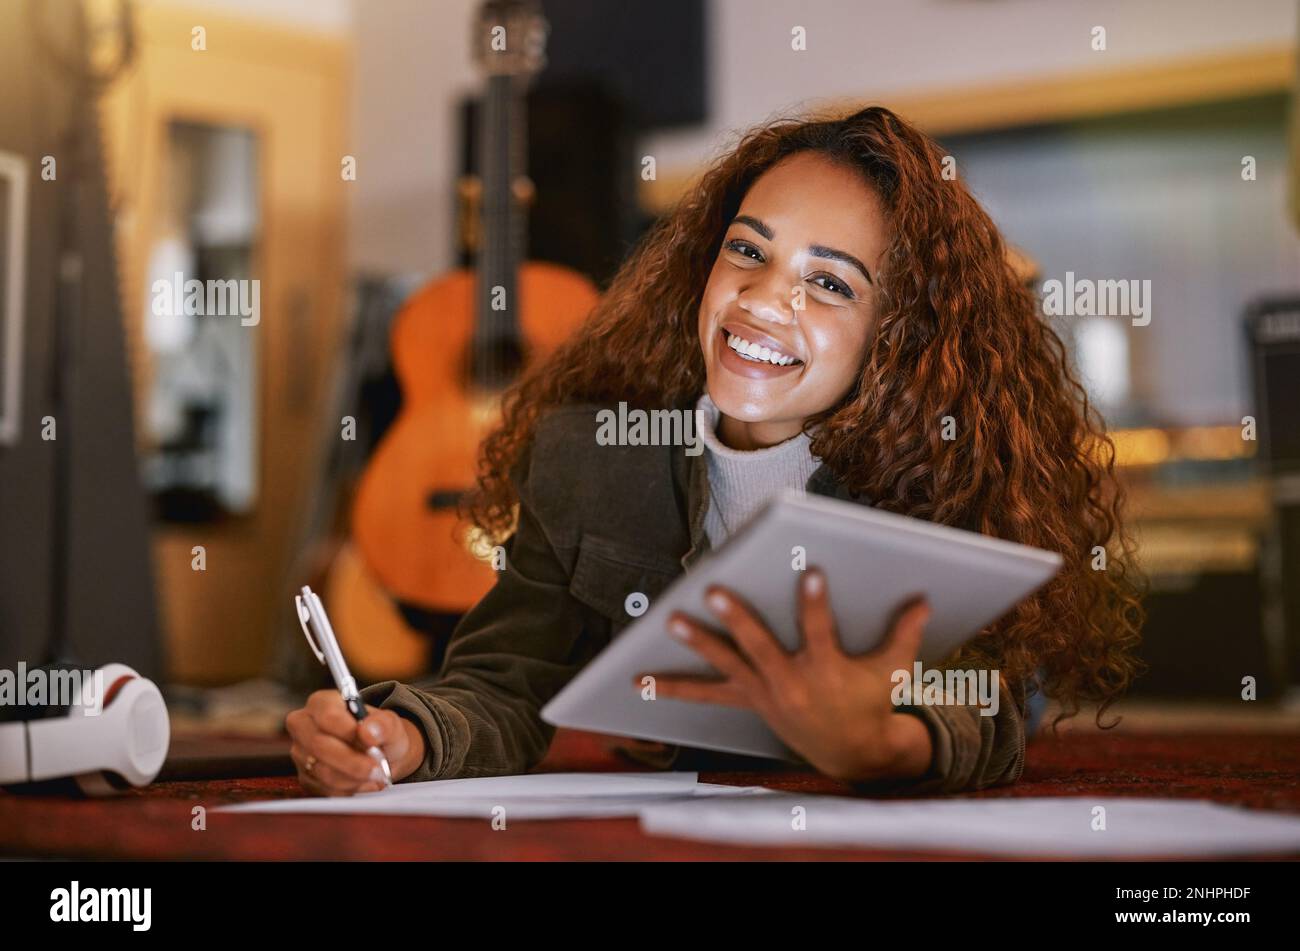 Femme noire, sourire en portrait et tablette écrivant de la musique en studio pour la piste audio, la création de contenu ou le développement. Bonne chanson africaine américaine Banque D'Images